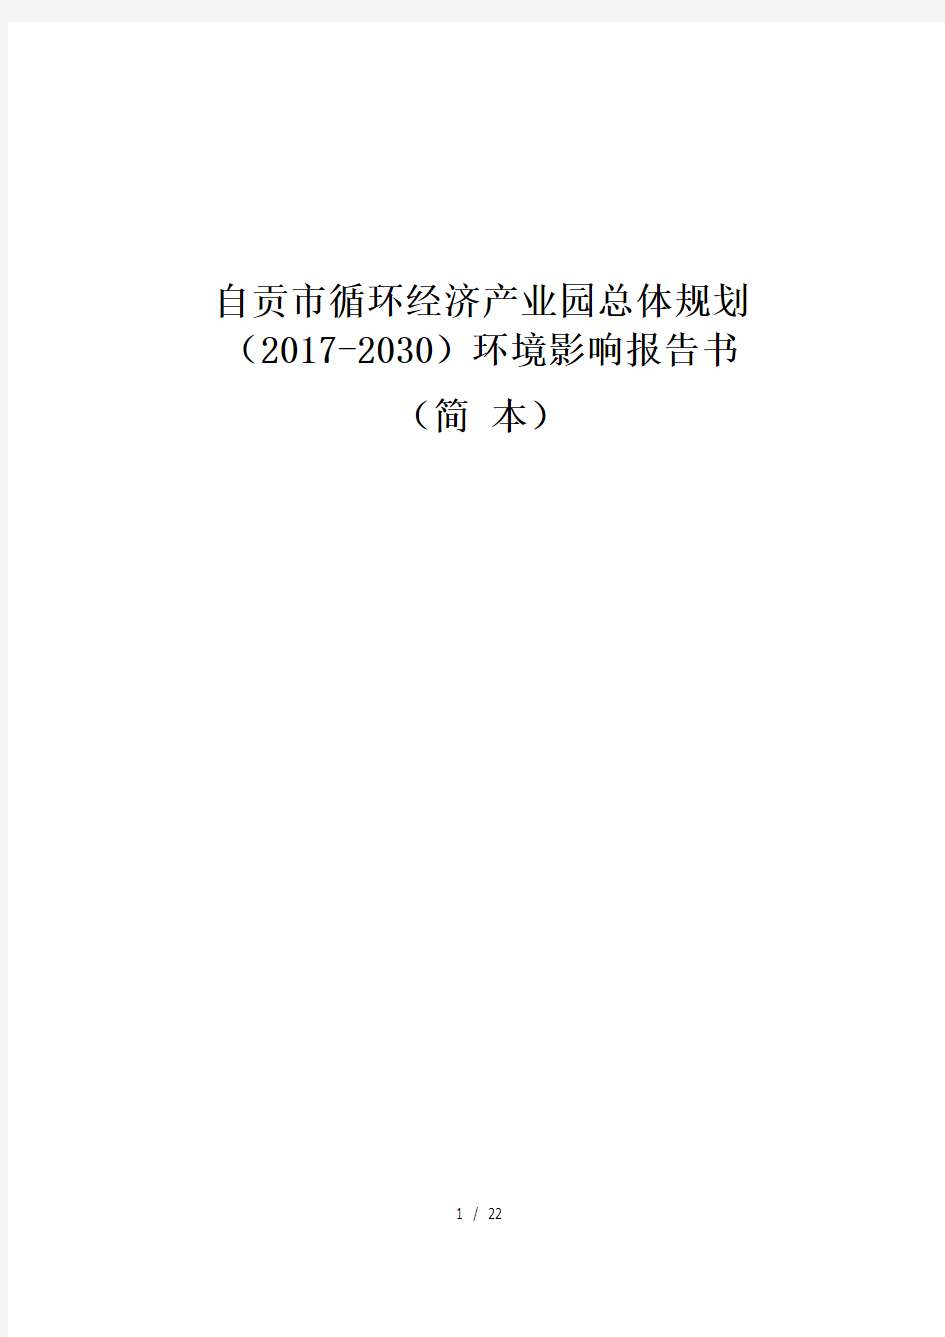 自贡市循环经济产业园总体规划(2017-2030)环境影响报告书